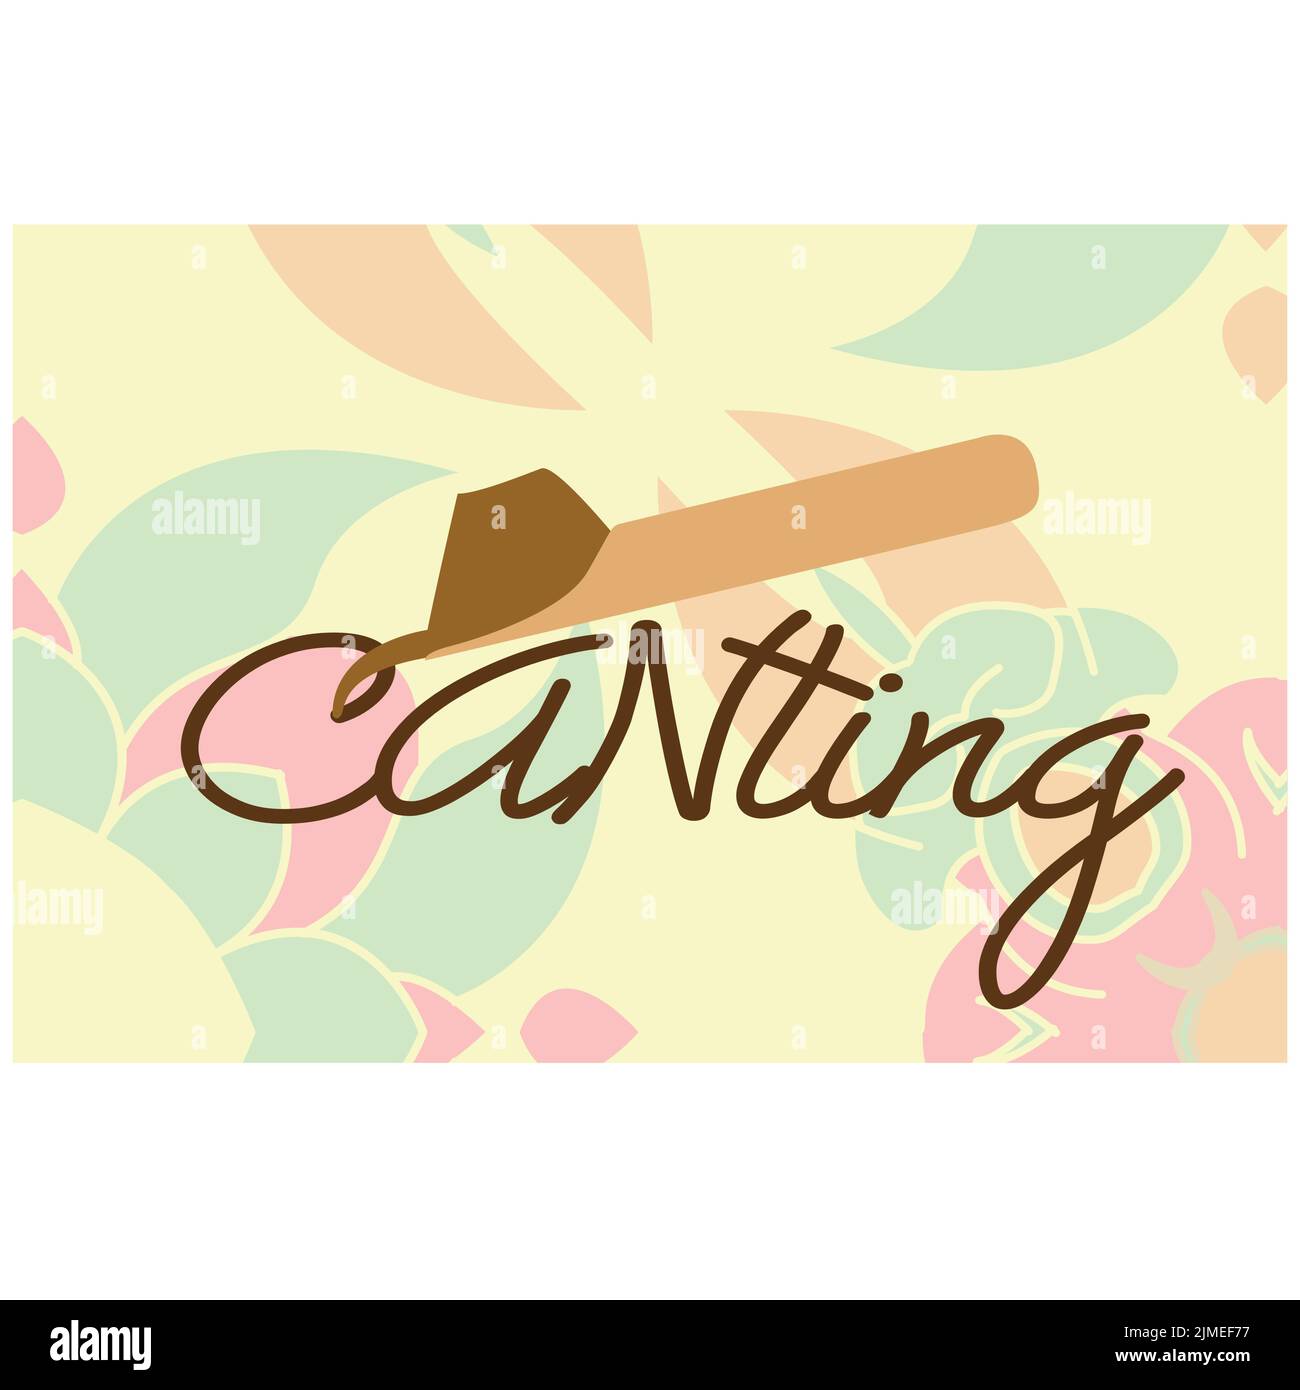 Canting, ein Werkzeug, das verwendet wird, um Batik traditionell in Indonesien zu machen. Inspirierende Logos. vektordatei, eps 10 Stock Vektor